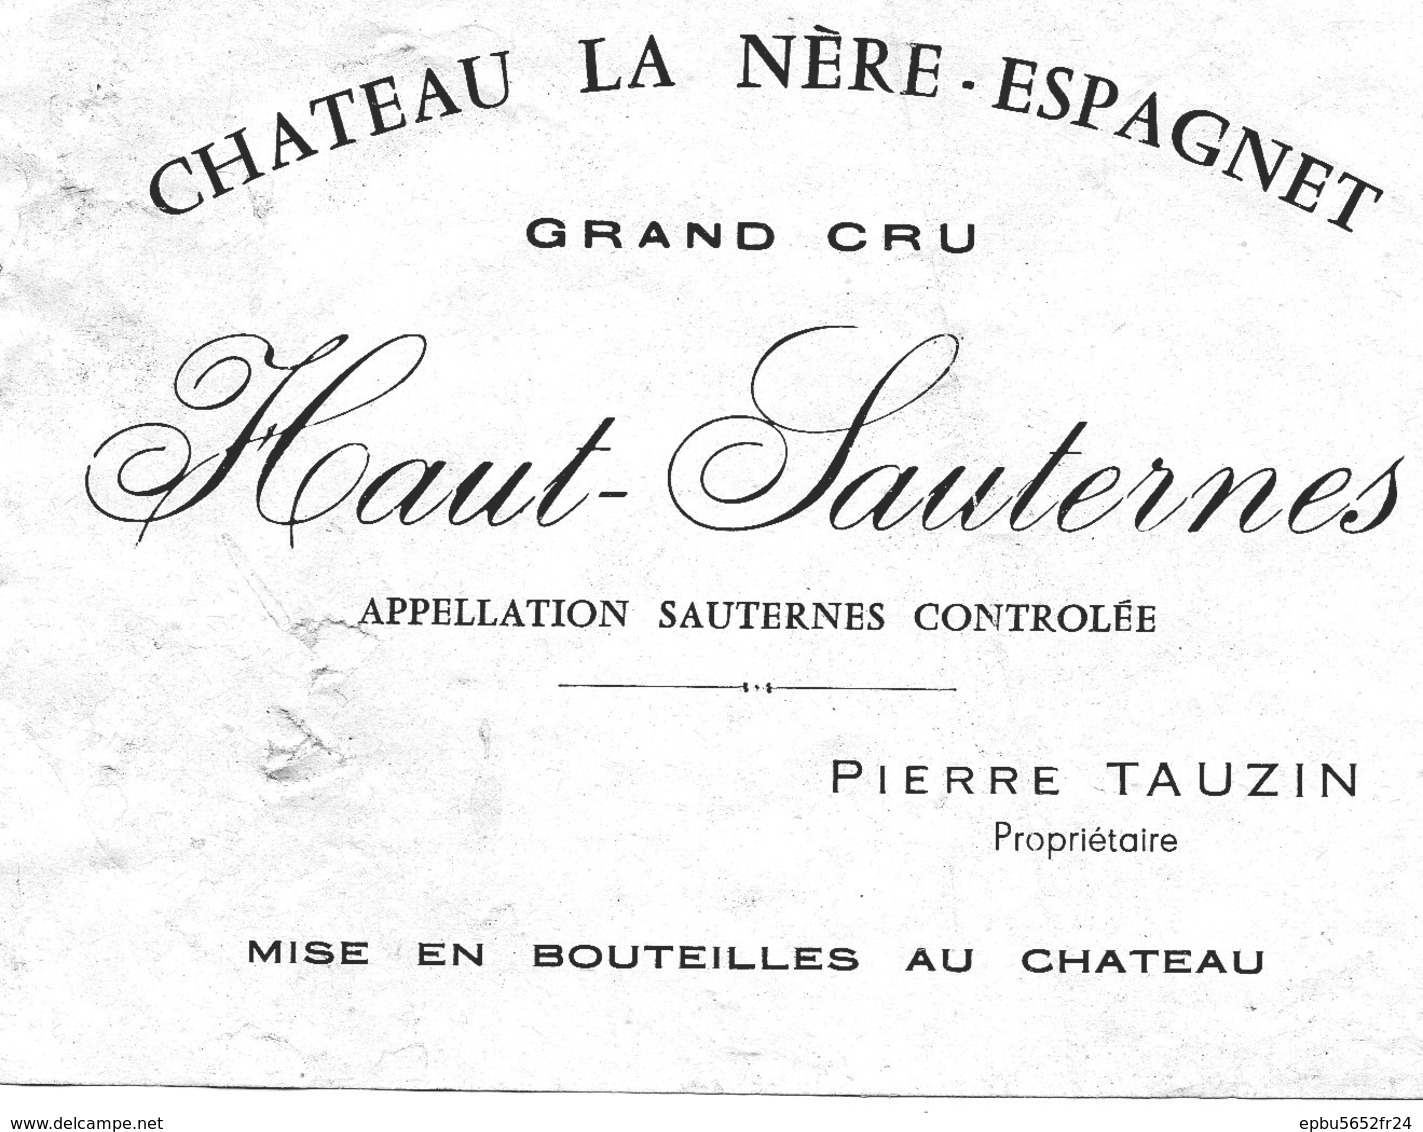 Etiquette (12,2X9,5) Château LA NERE-ESPAGNET Grand Cru  Haut -Sauternes  Pierre Tauzin Propriétaire - Bordeaux